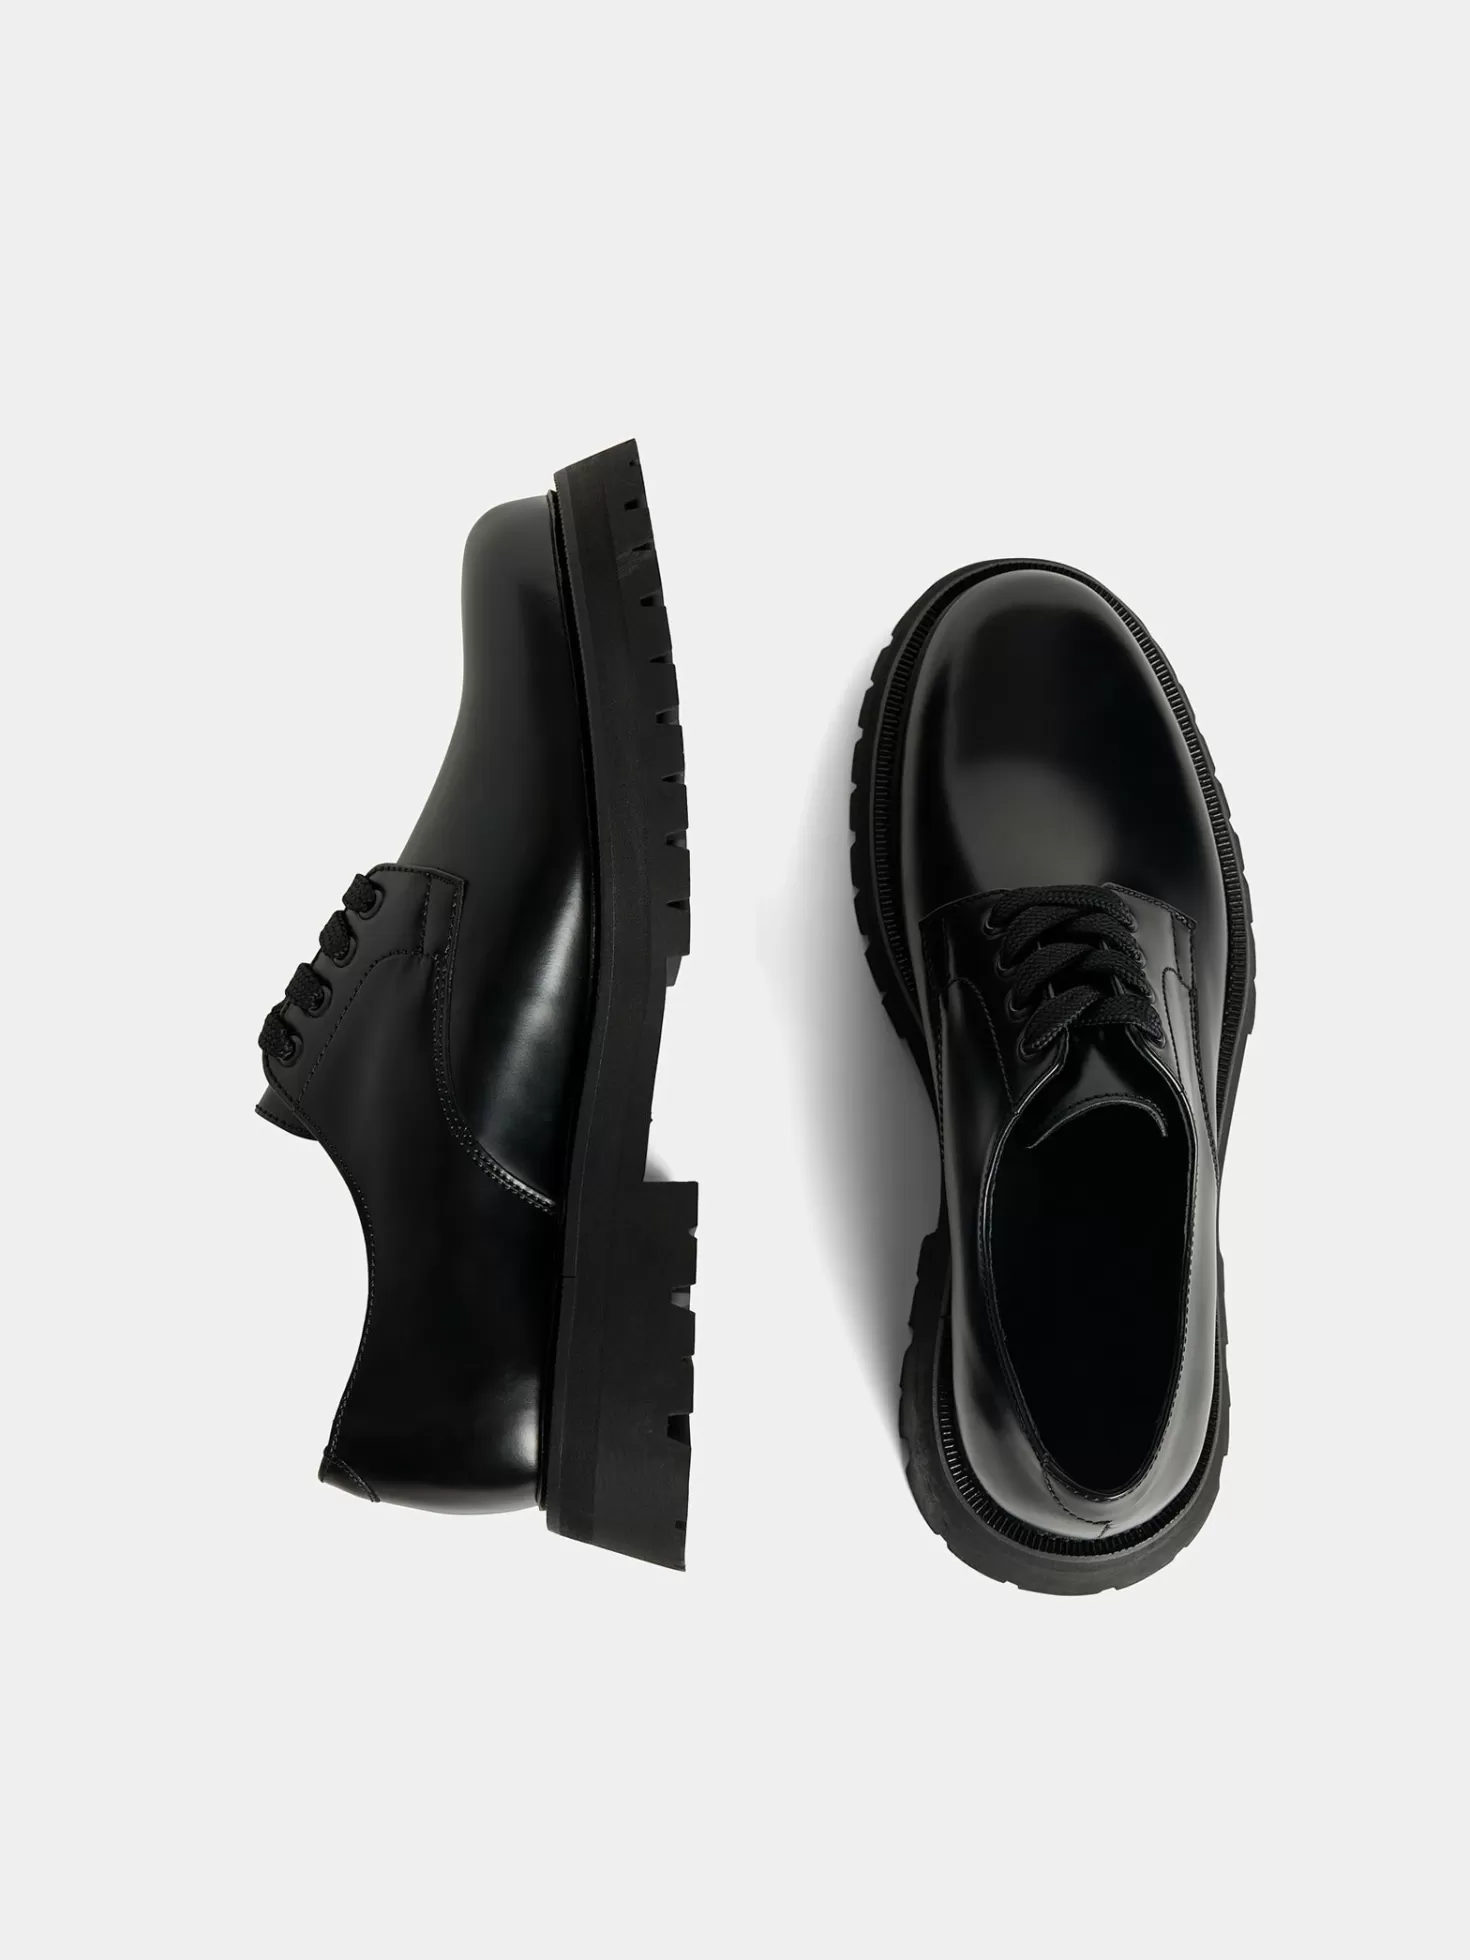 Skor<J.Lindeberg Derby Leather Shoe Black